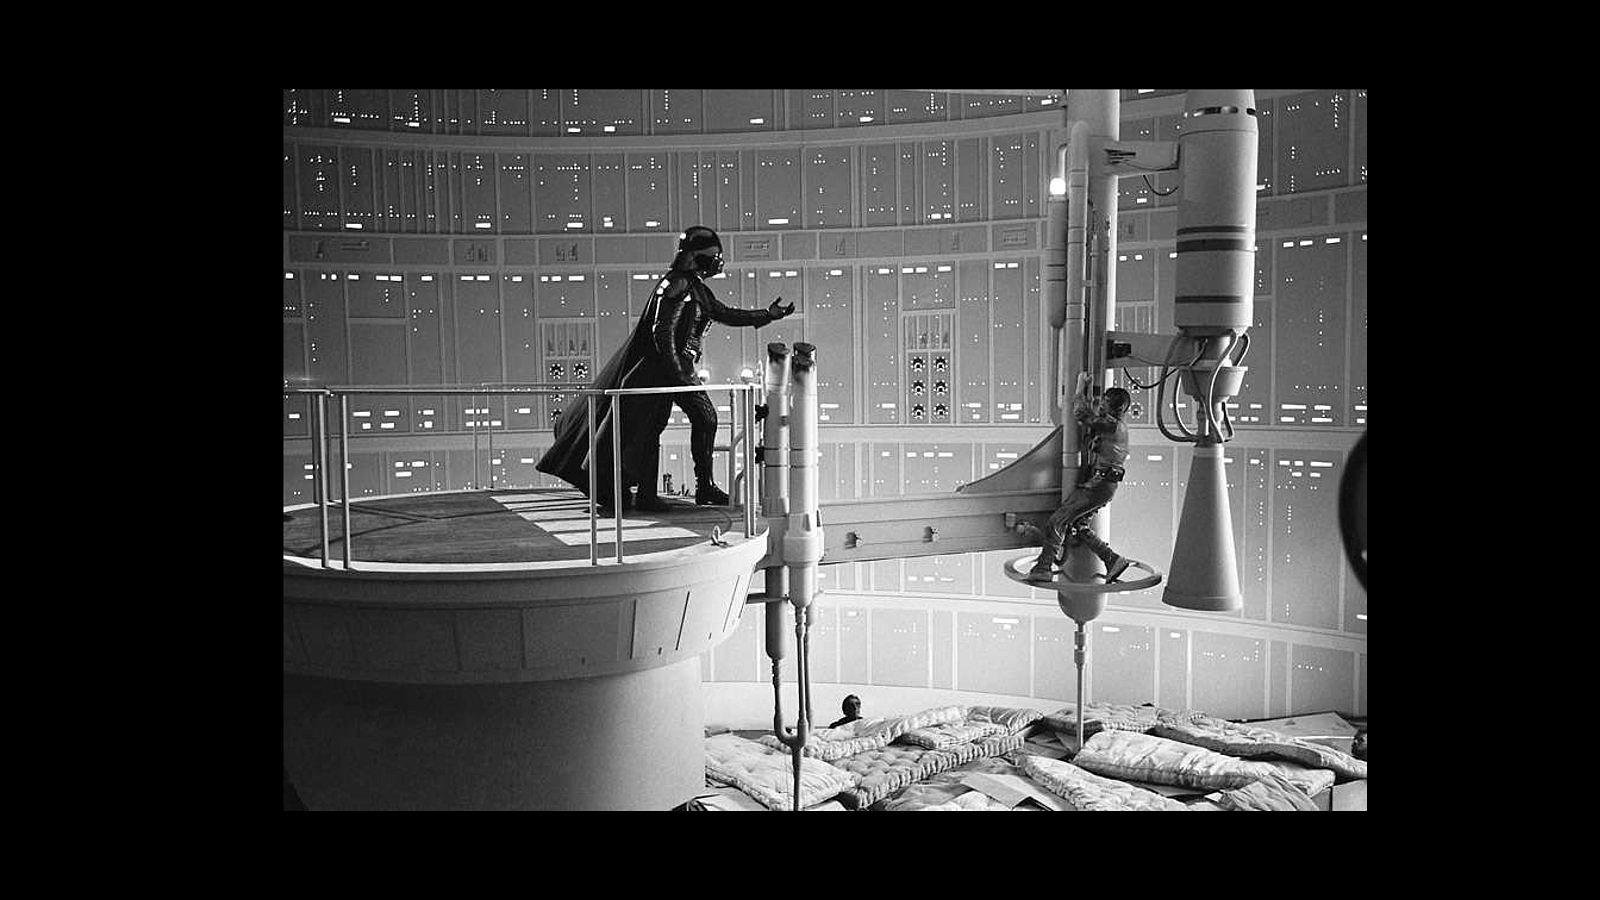 Una de las escenas de la lucha final de Dark Vader y Luke Skywalker, con lo colchones debajo por si alguno de loas actores sufre una caída